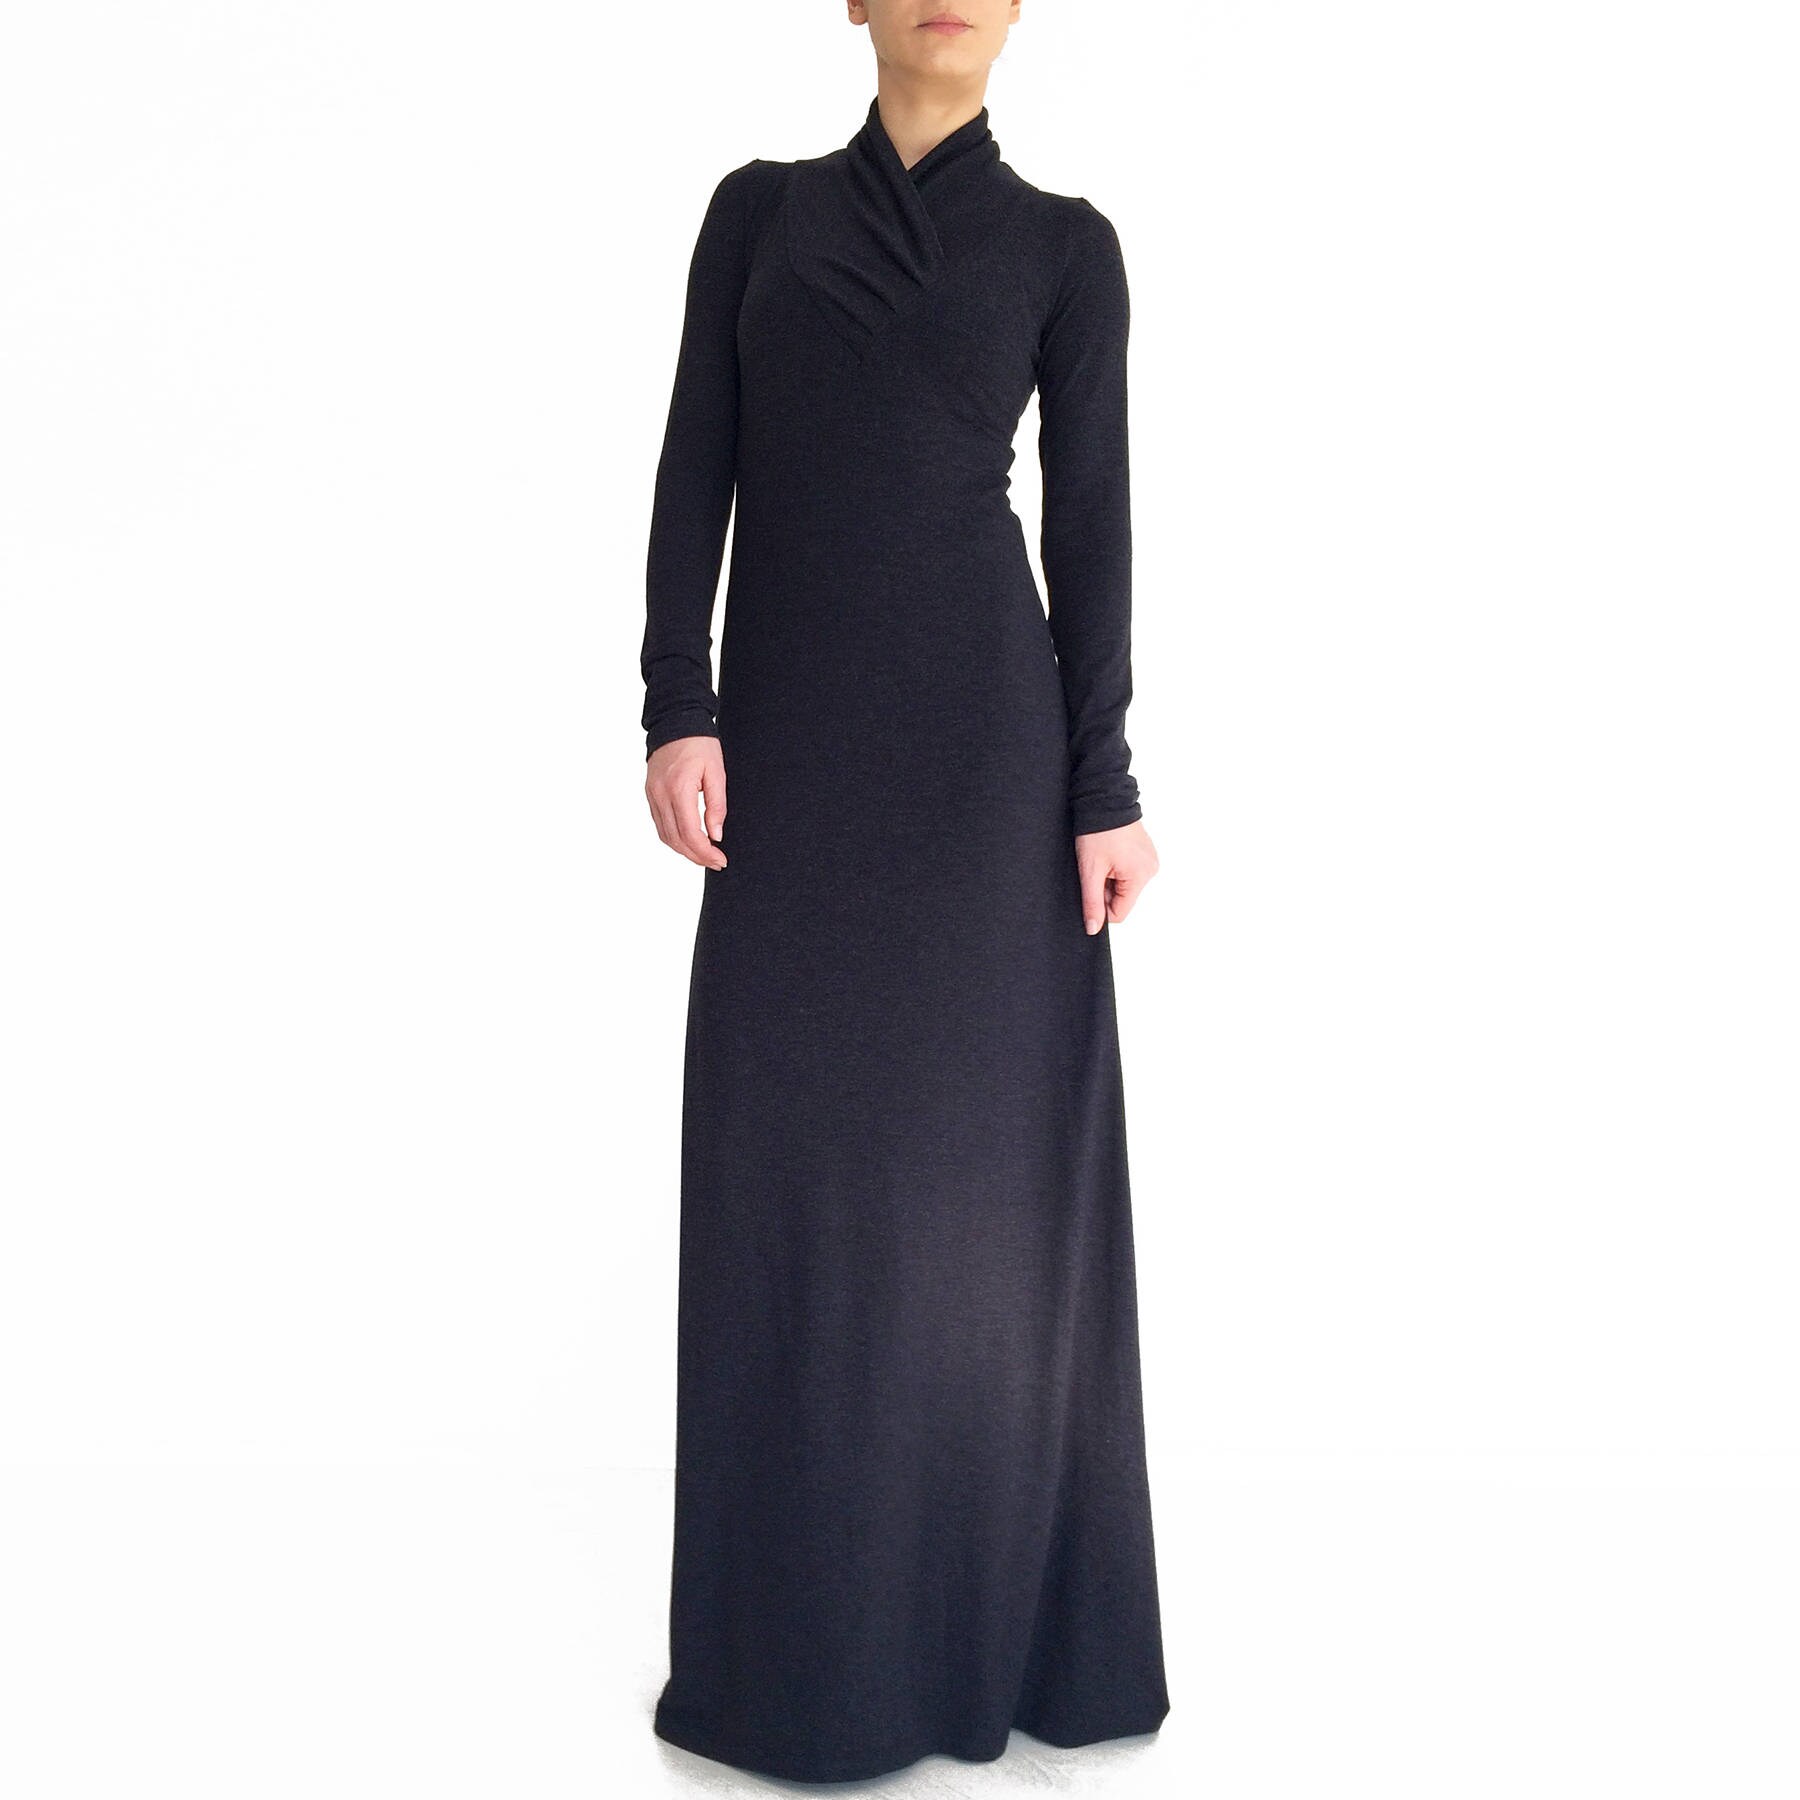 Black maxi dress/ Long sleeve dress/ Minimalistic maxi dress/